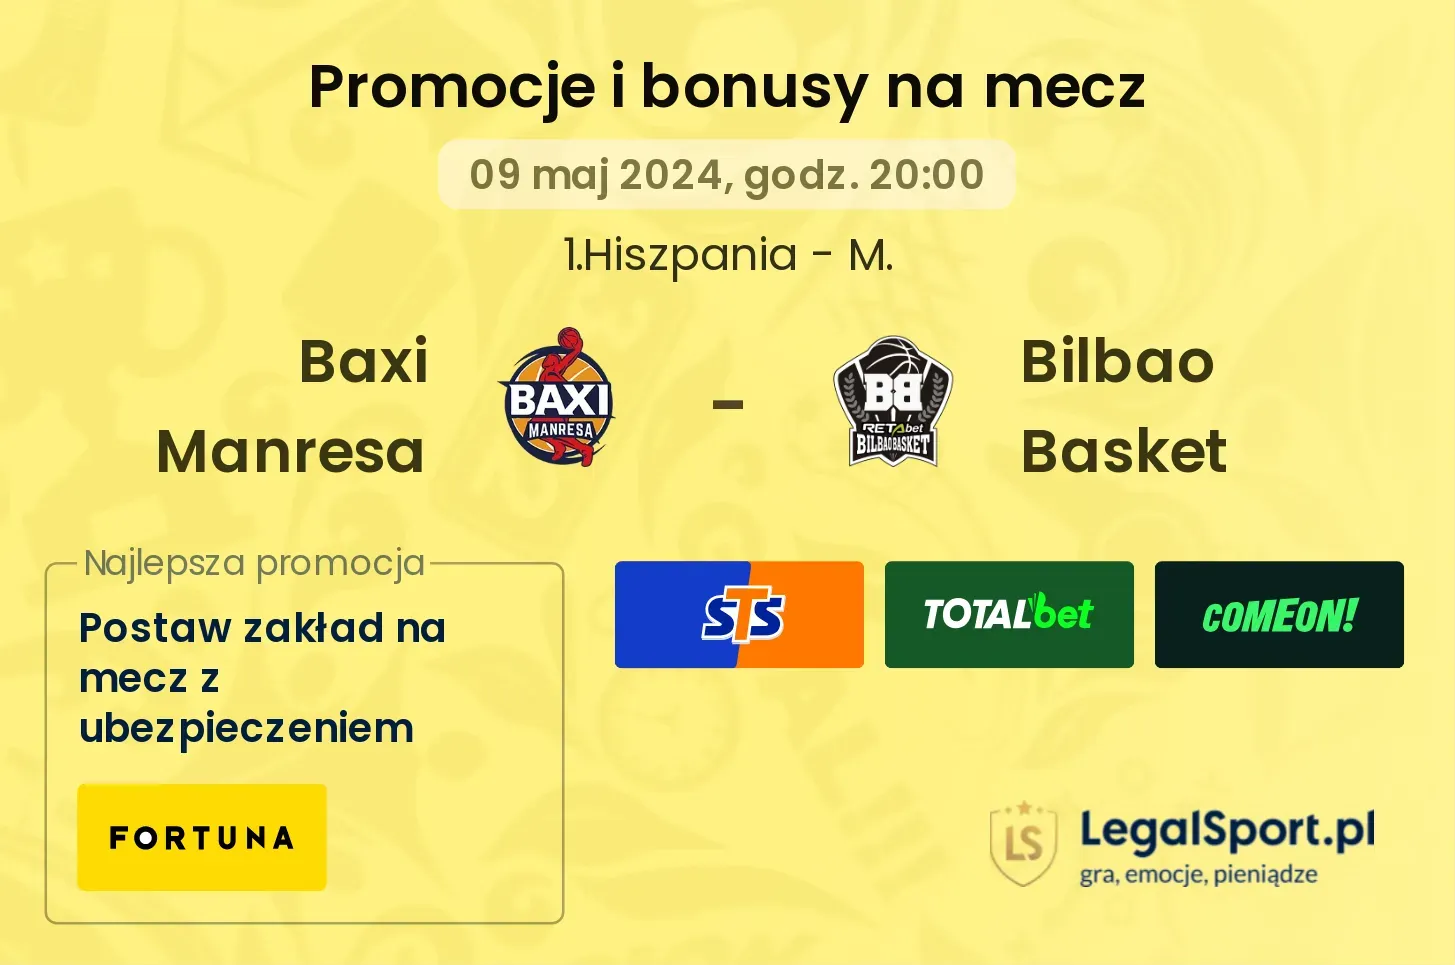 Baxi Manresa - Bilbao Basket promocje bonusy na mecz